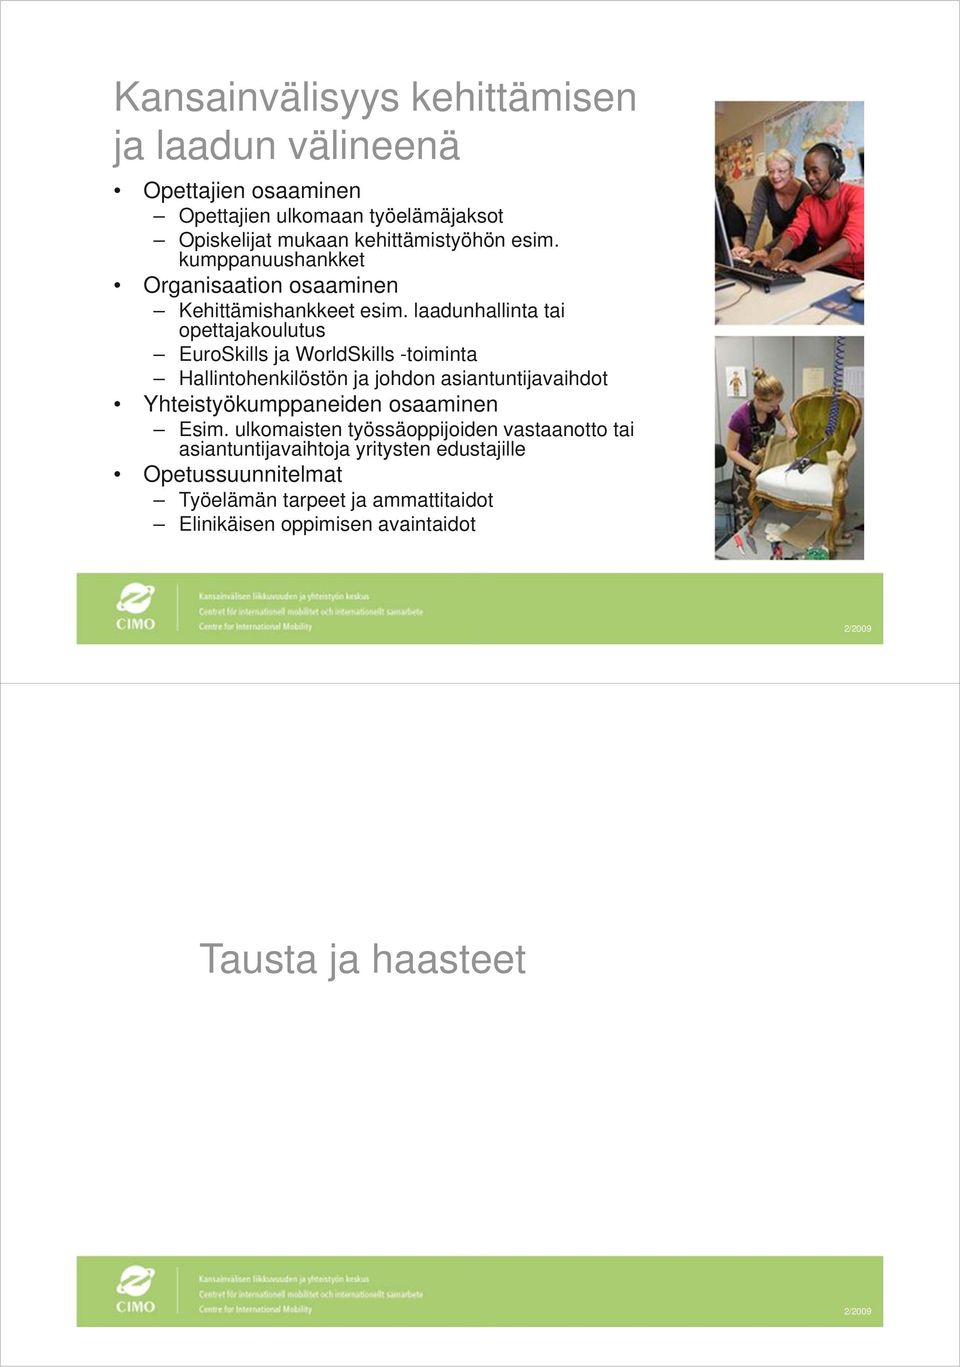 laadunhallinta tai opettajakoulutus EuroSkills ja WorldSkills -toiminta Hallintohenkilöstön ja johdon asiantuntijavaihdot